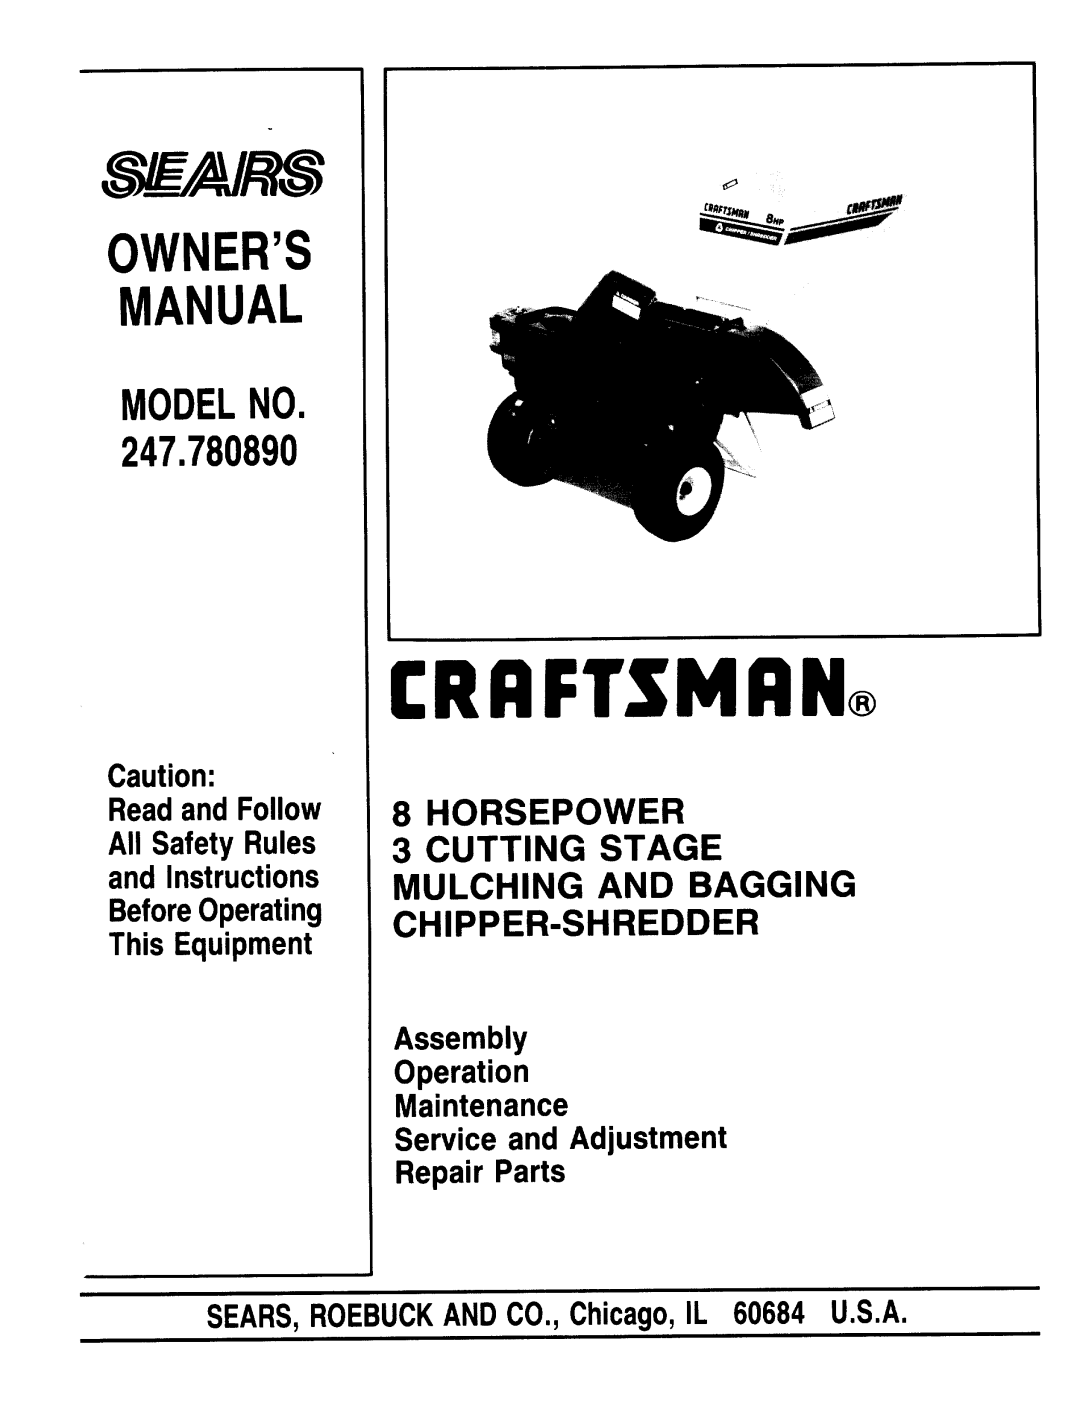 Sears 247.78089 manual 